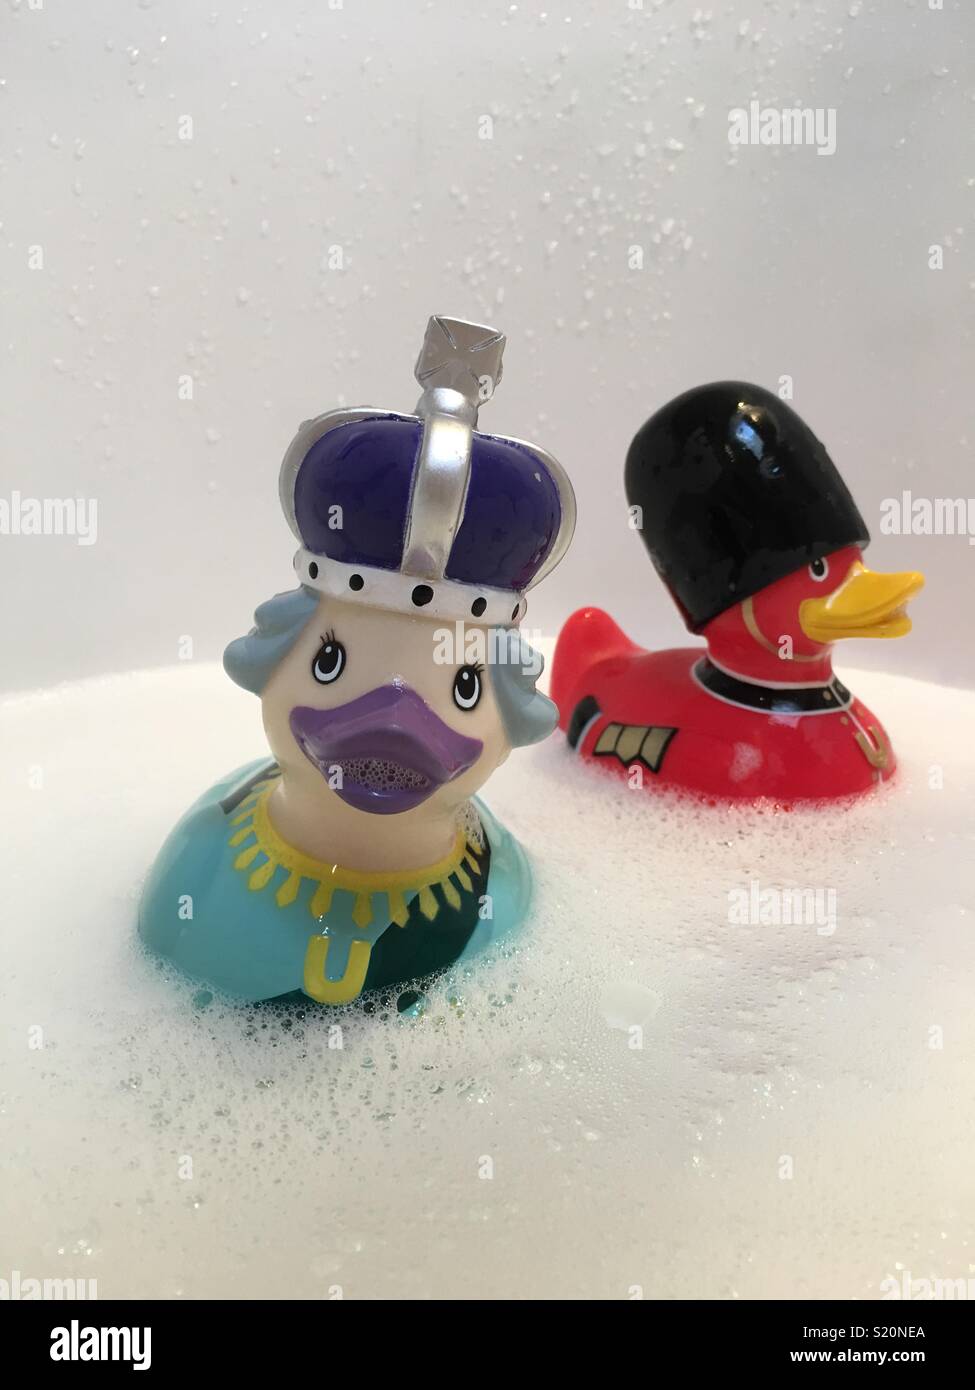 La regina Elisabetta e la Regina della Guardia duckies in gomma in una vasca da bagno Foto Stock